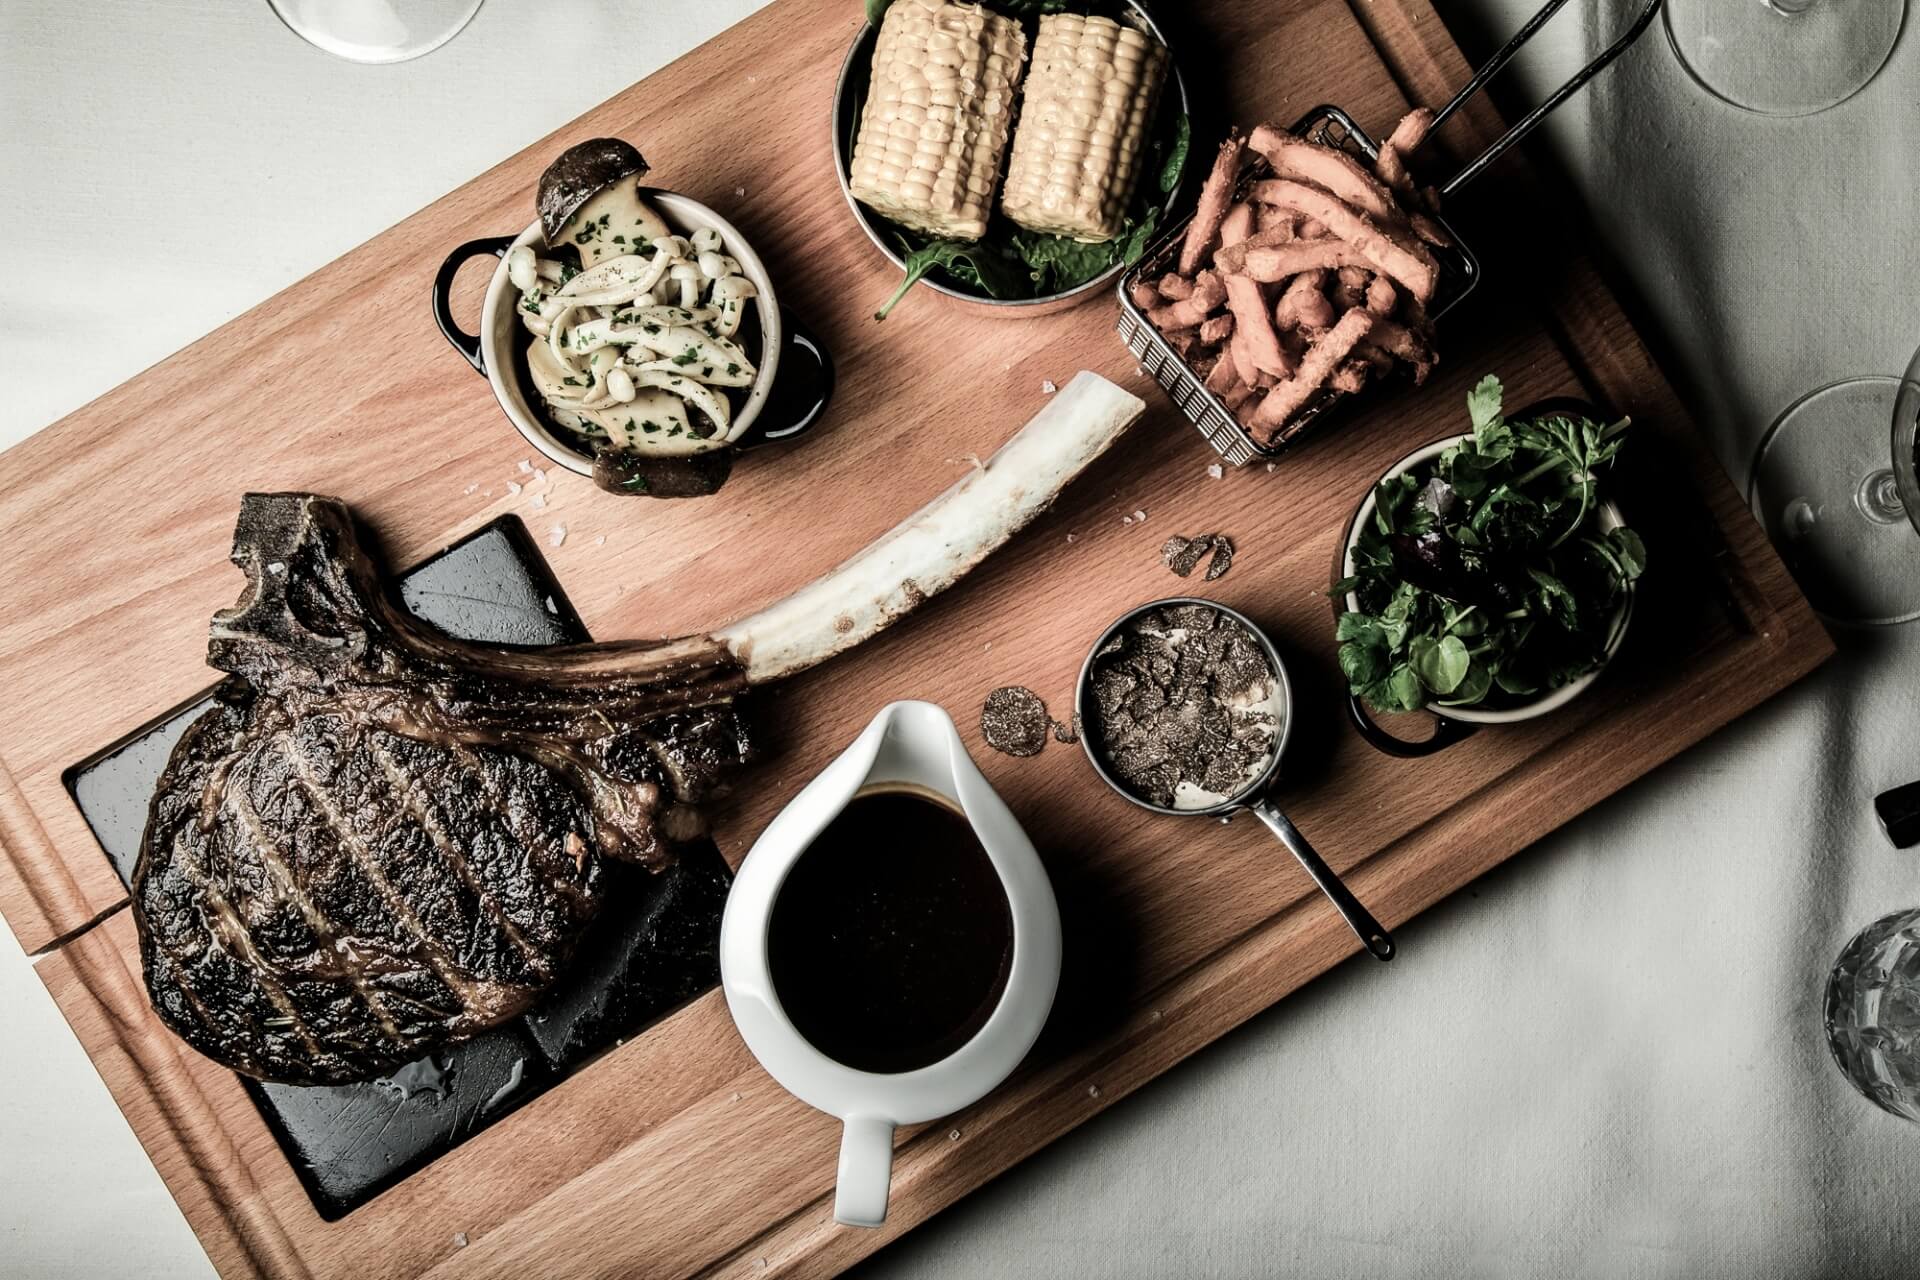 Ein üppiges Festmahl mit einem großen gegrillten Tomahawk-Steak, dazu Maiskolben, Zwiebelringe, Salat und Sahnesauce, elegant präsentiert auf einem Holzbrett in gehobener Atmosphäre.